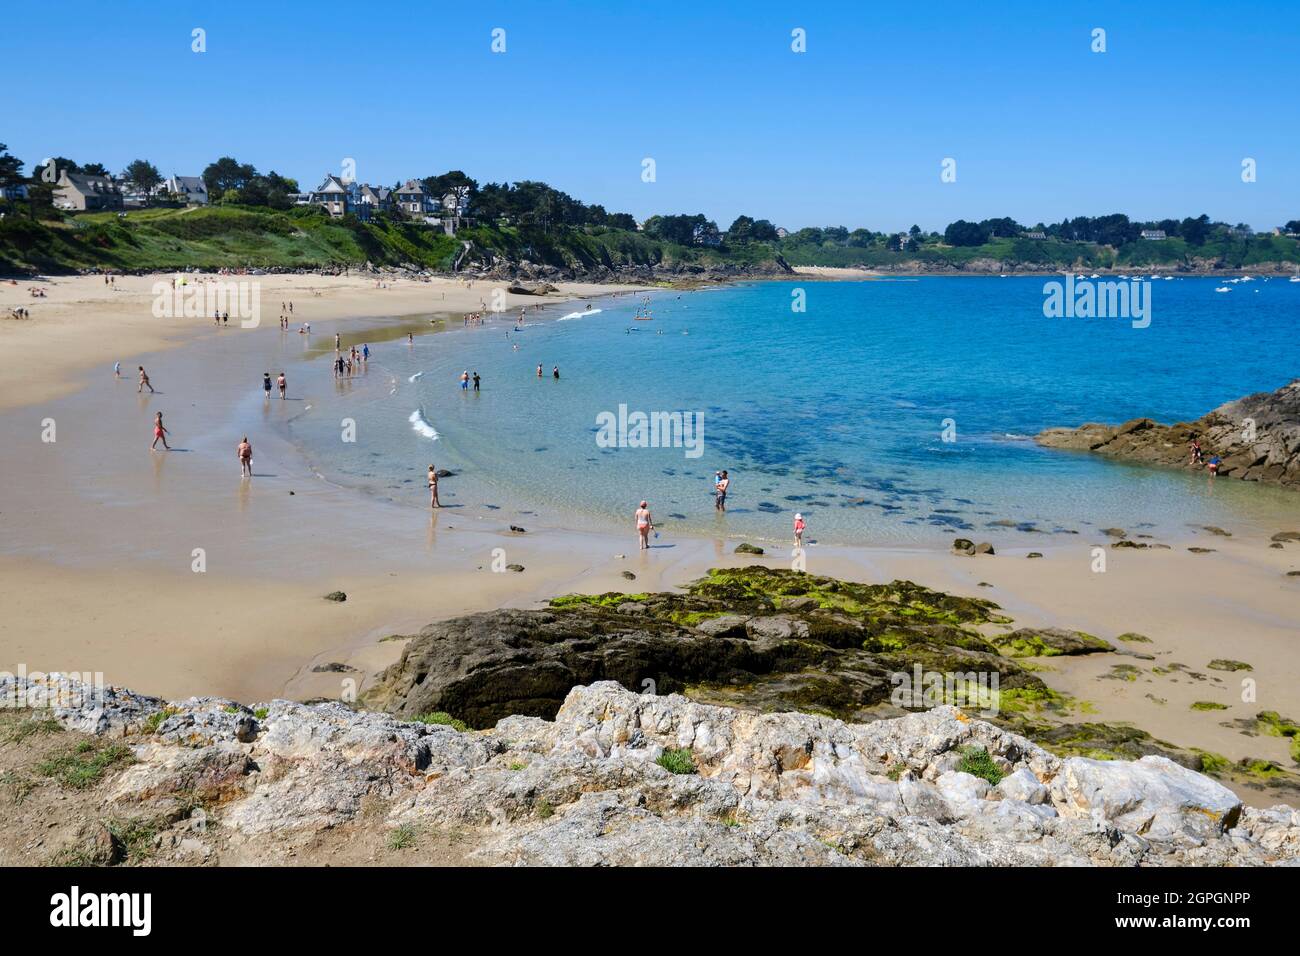 France, Ille et Vilaine, Cote d'Emeraude (Emerald Coast), Saint Lunaire, beach of La Fourberie Stock Photo